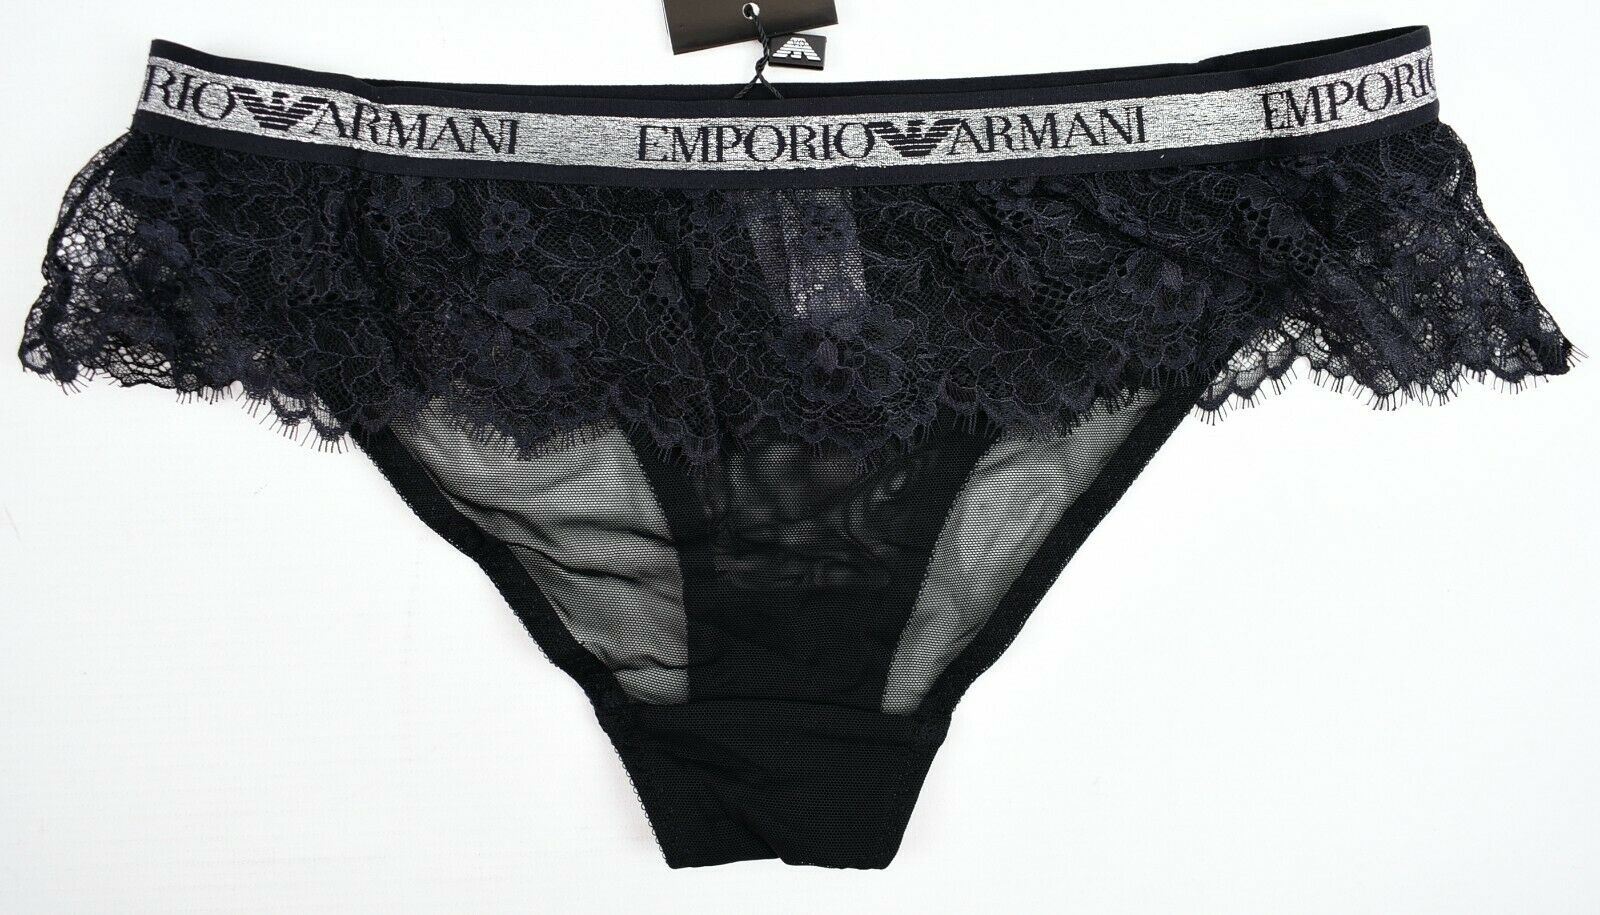 EMPORIO ARMANI Underwear: Women's Black Lace Frill Briefs Knickers, size S